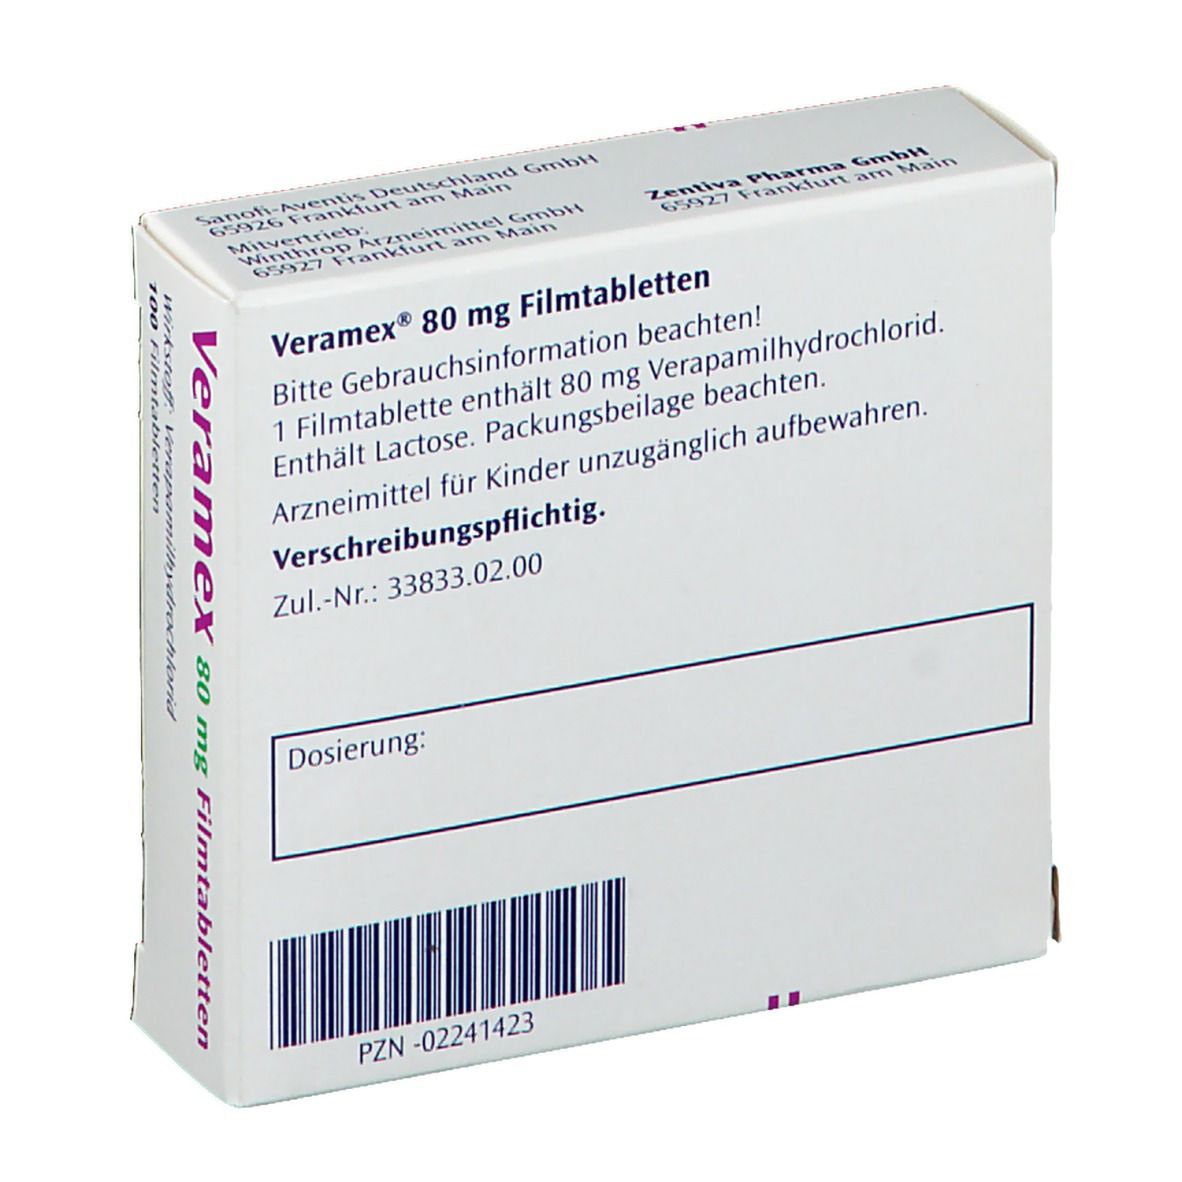 Veramex 80 mg Filmtabletten